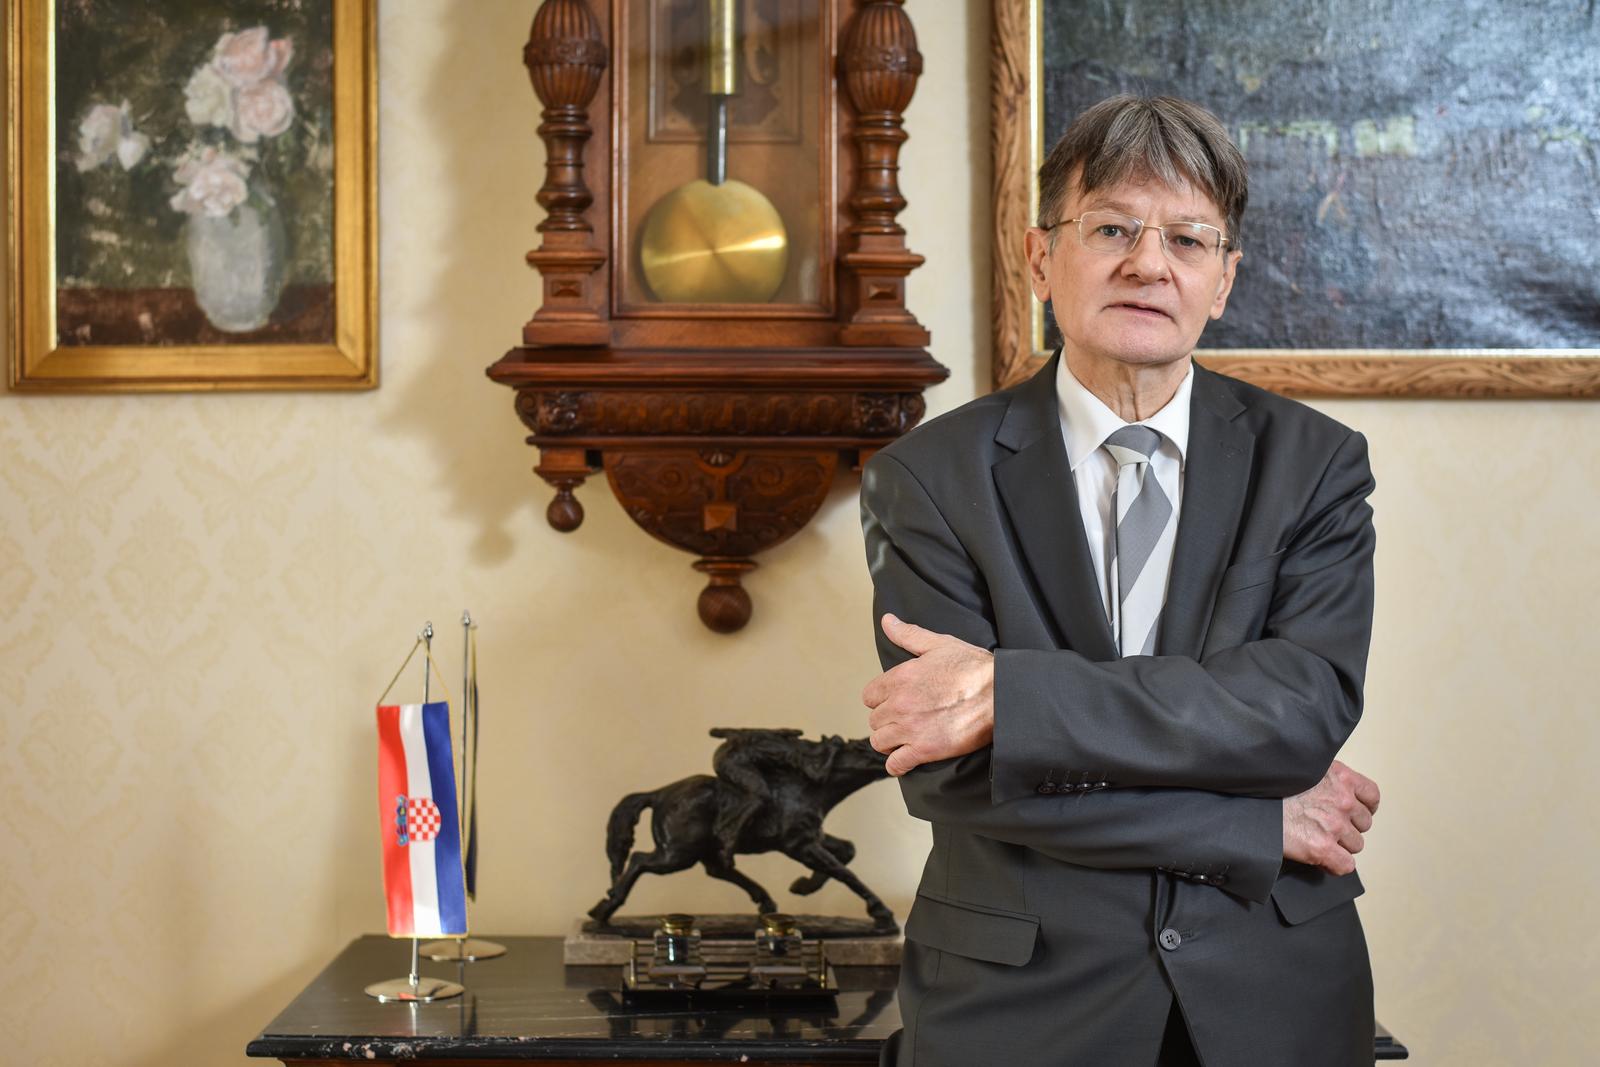 07.01.2022., Zagreb - Radovan Dobronic, predsjednik Vrhovnog suda Republike Hrvatske. 

 Photo: Sasa Zinaja/NFOTO